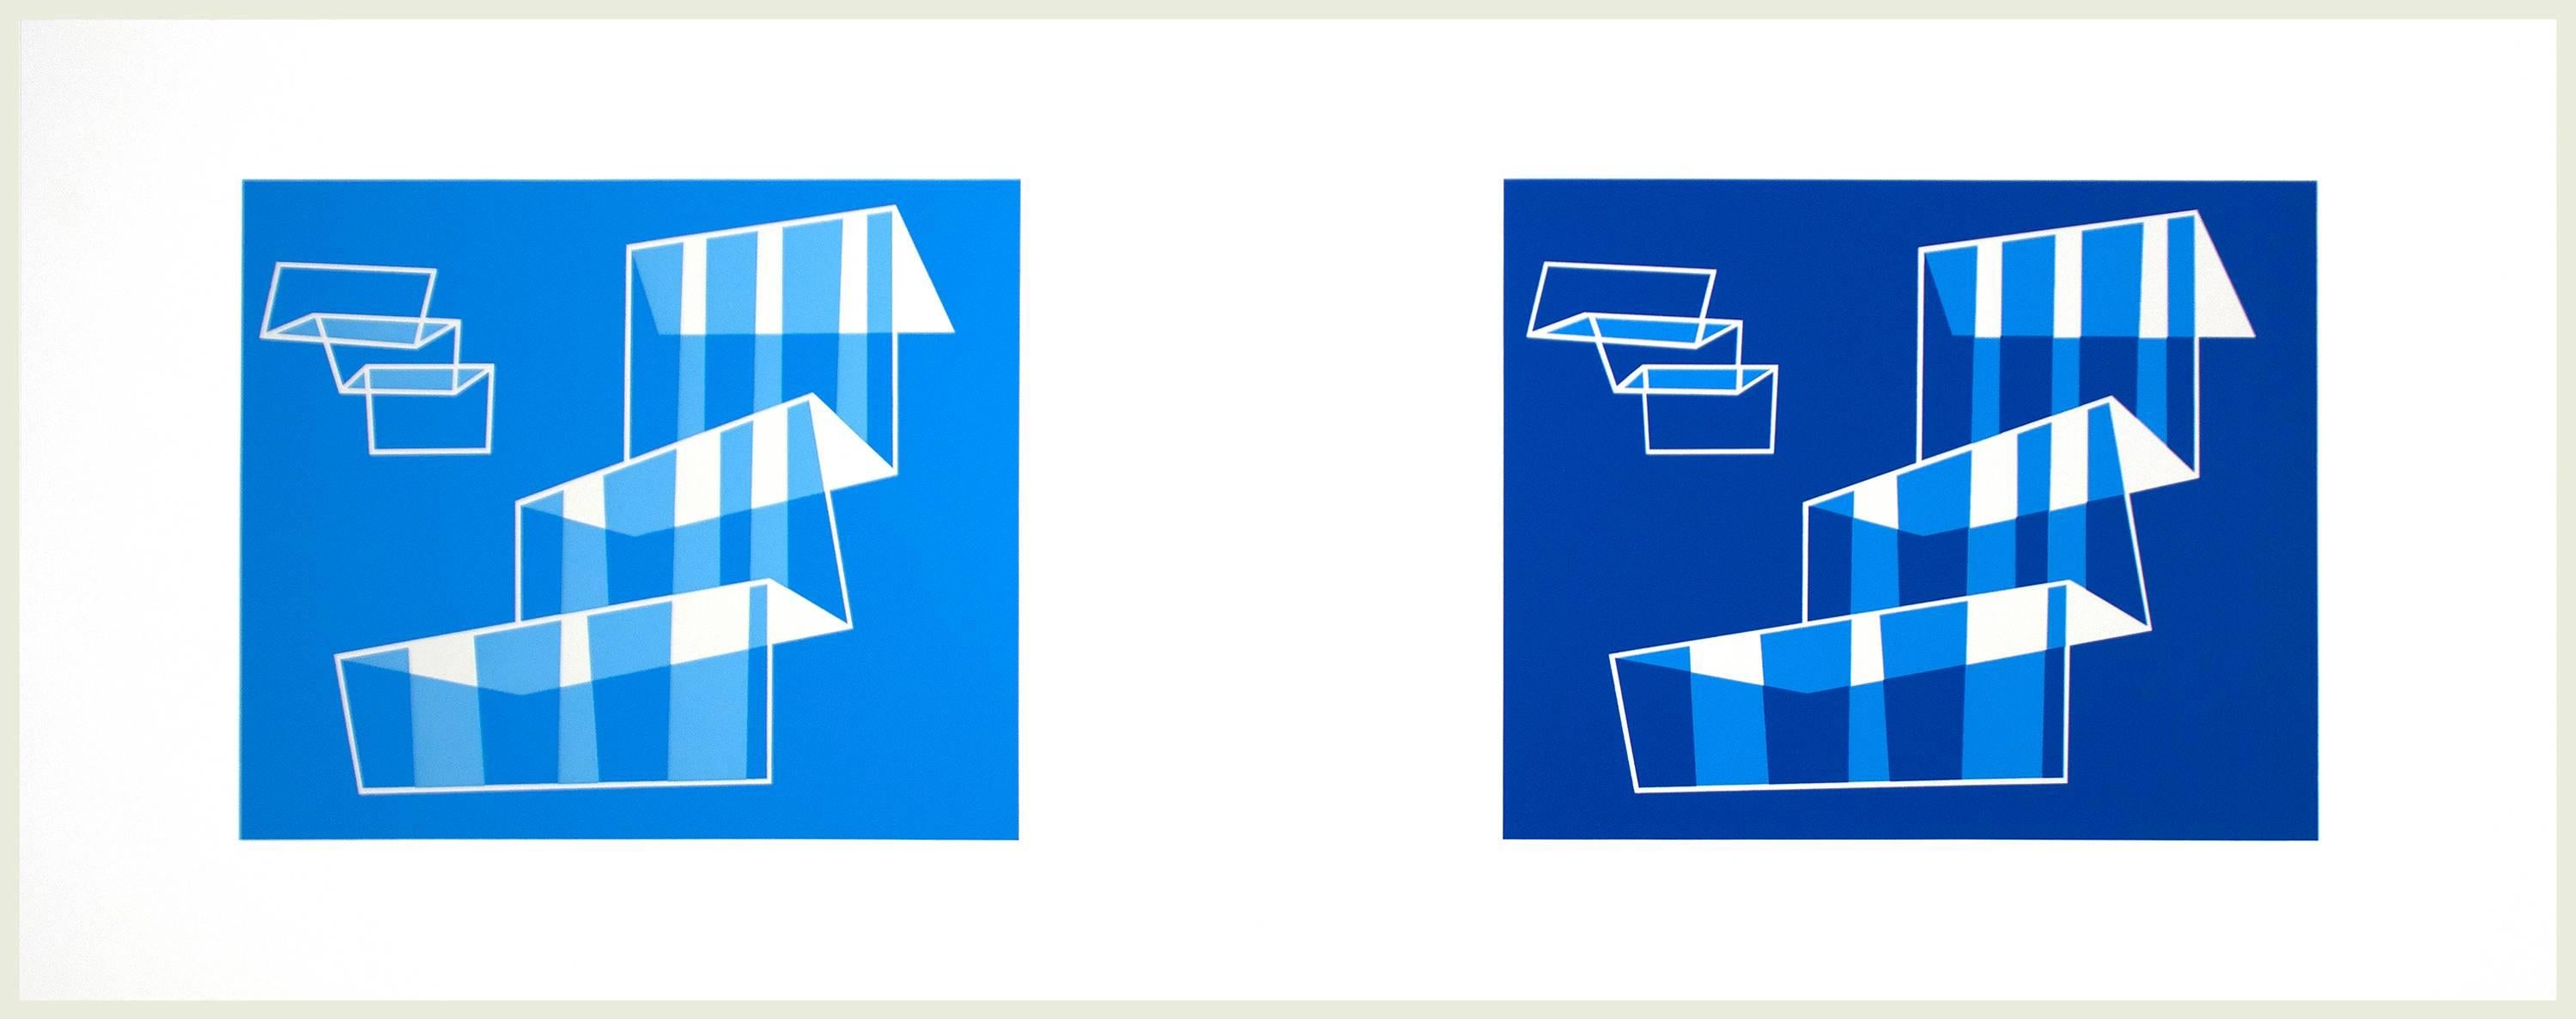 Josef Albers Abstract Print – Die Konstruktion: Articulation 1981.524.1.1